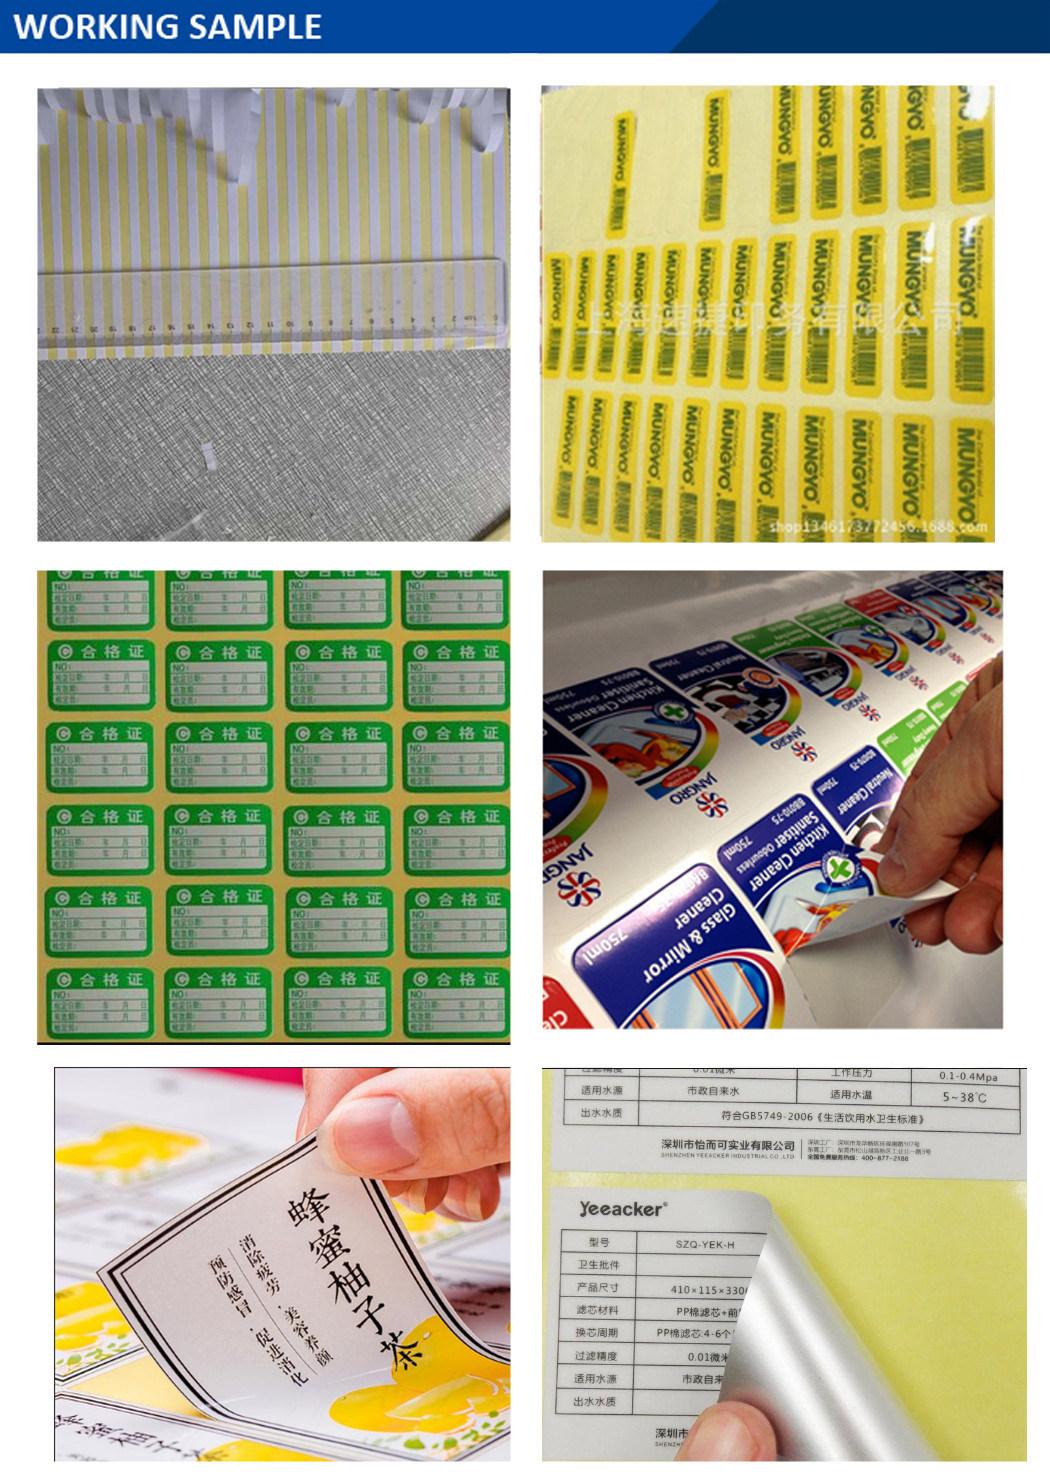 Fast and Accurate Automatic Sticker Cutting Machine